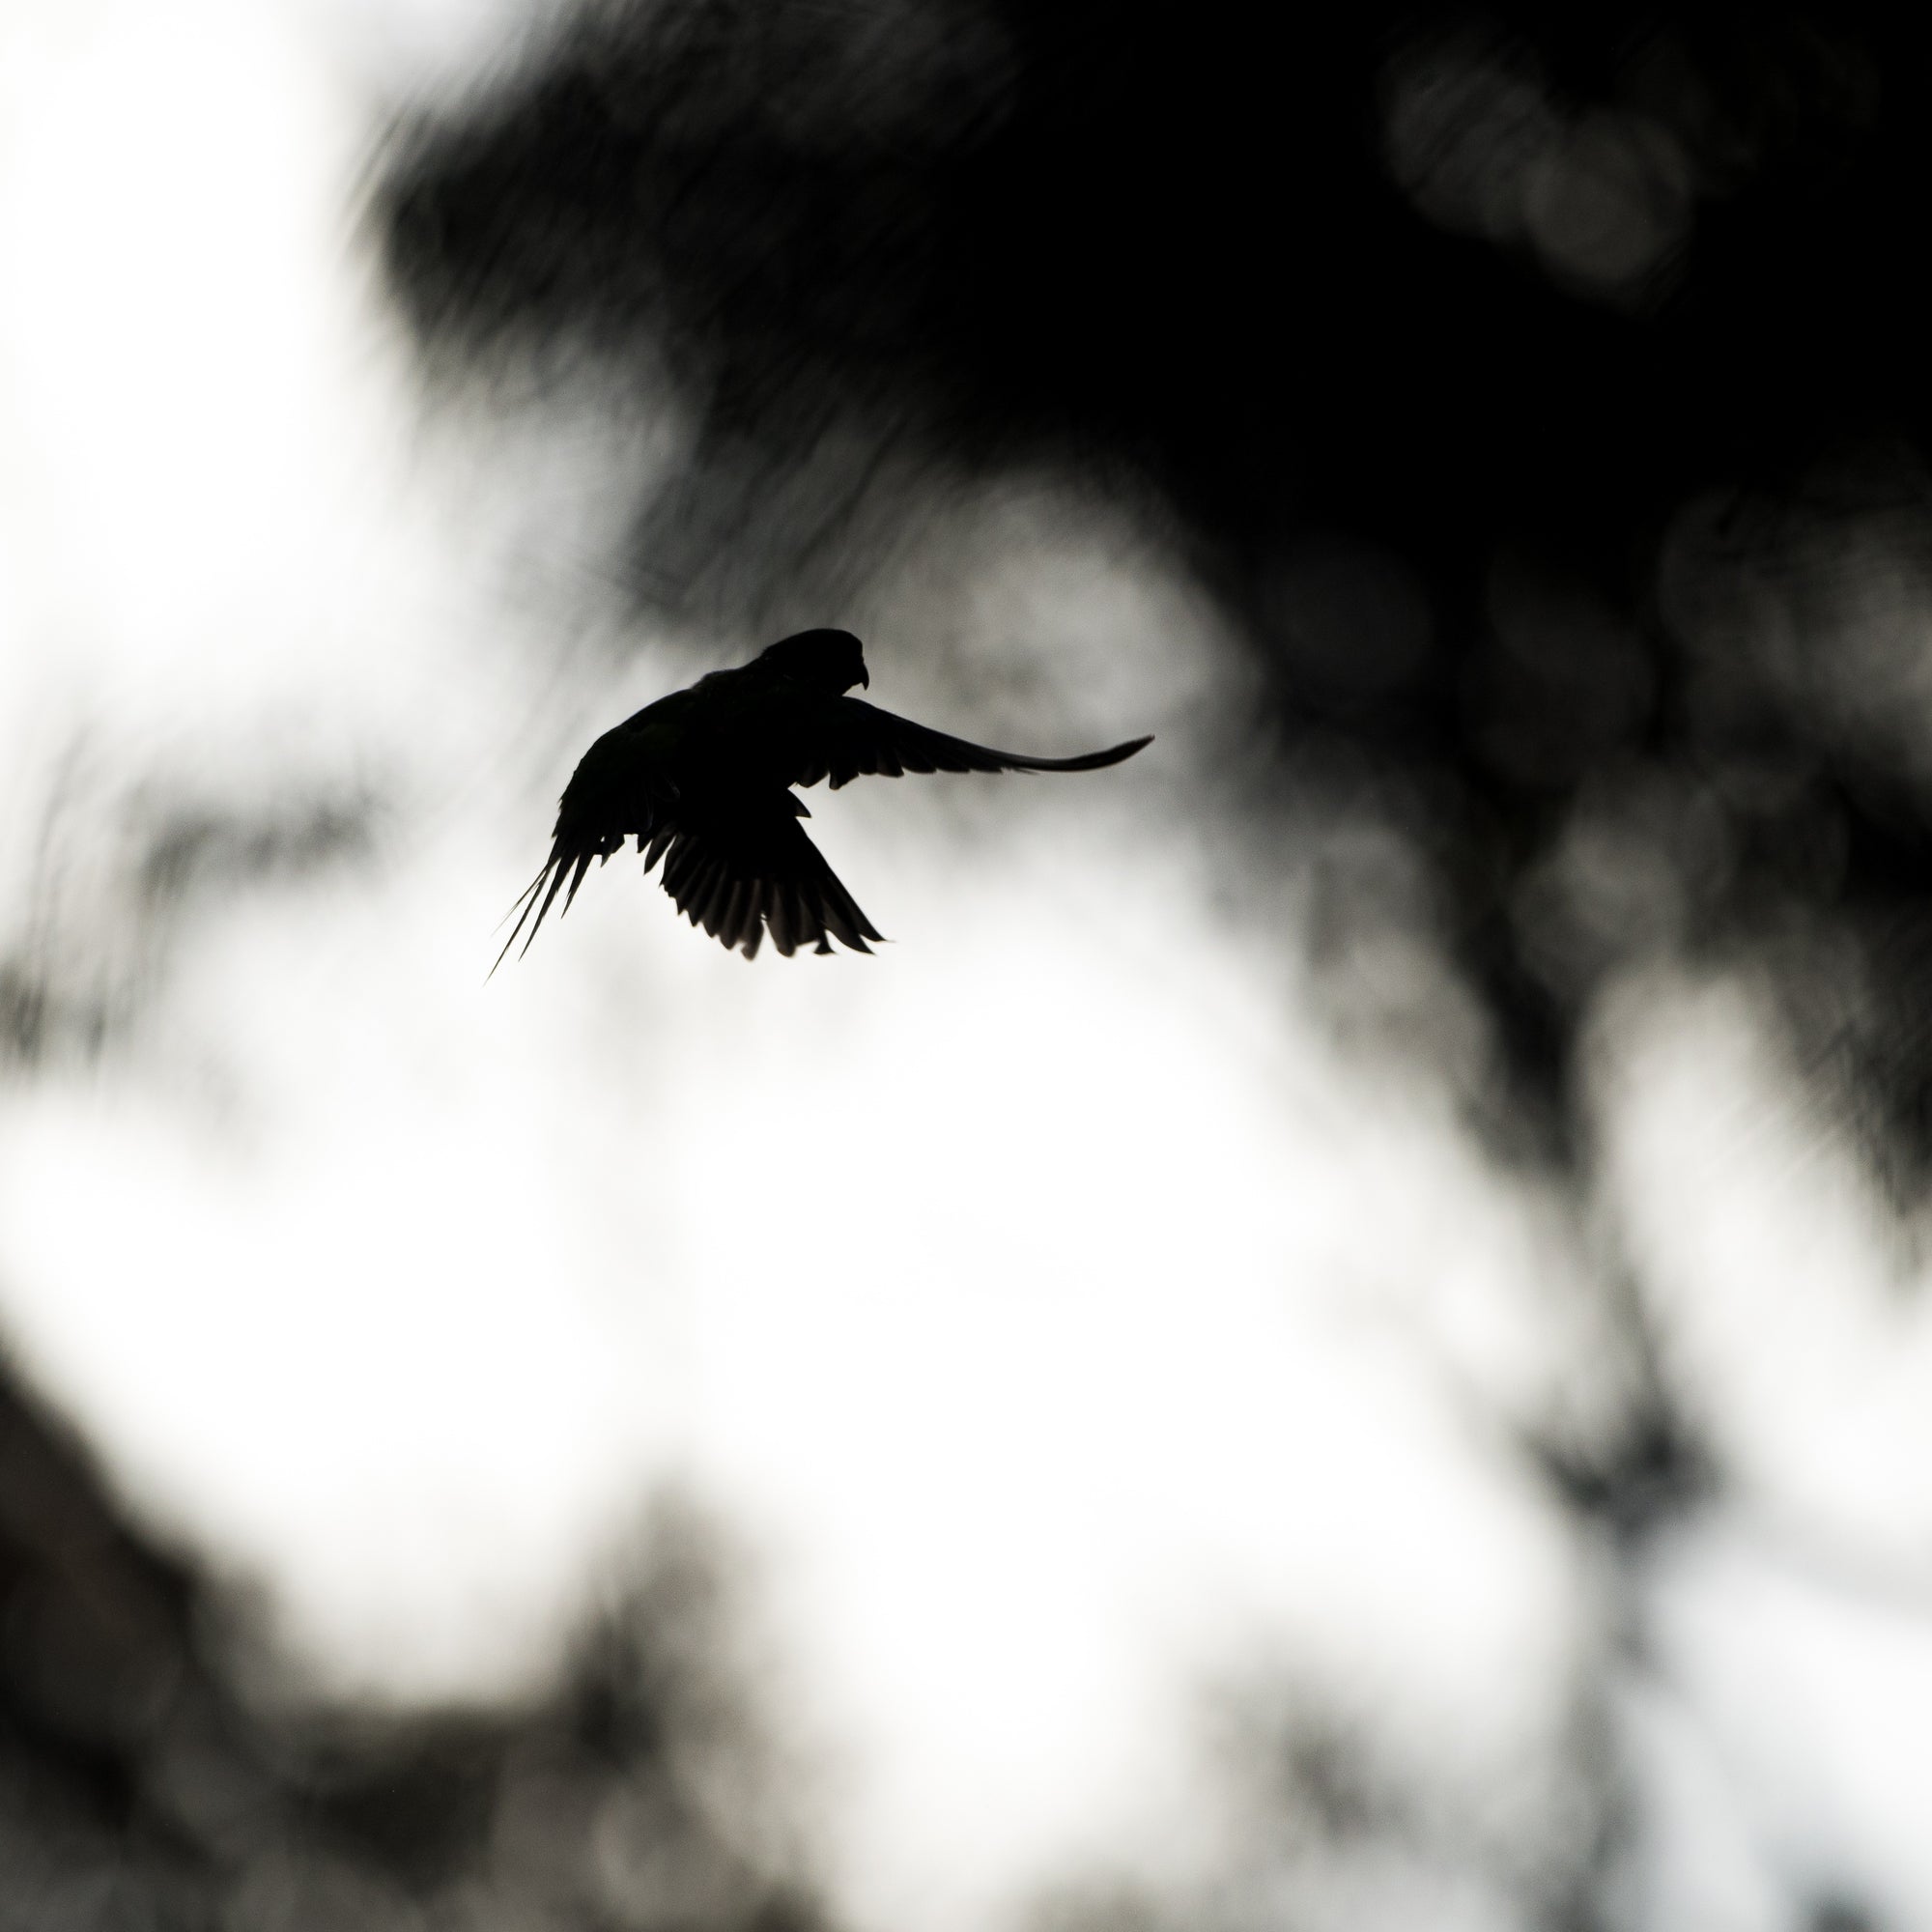 Antoine Chretien - Before dusk, time to fly away.